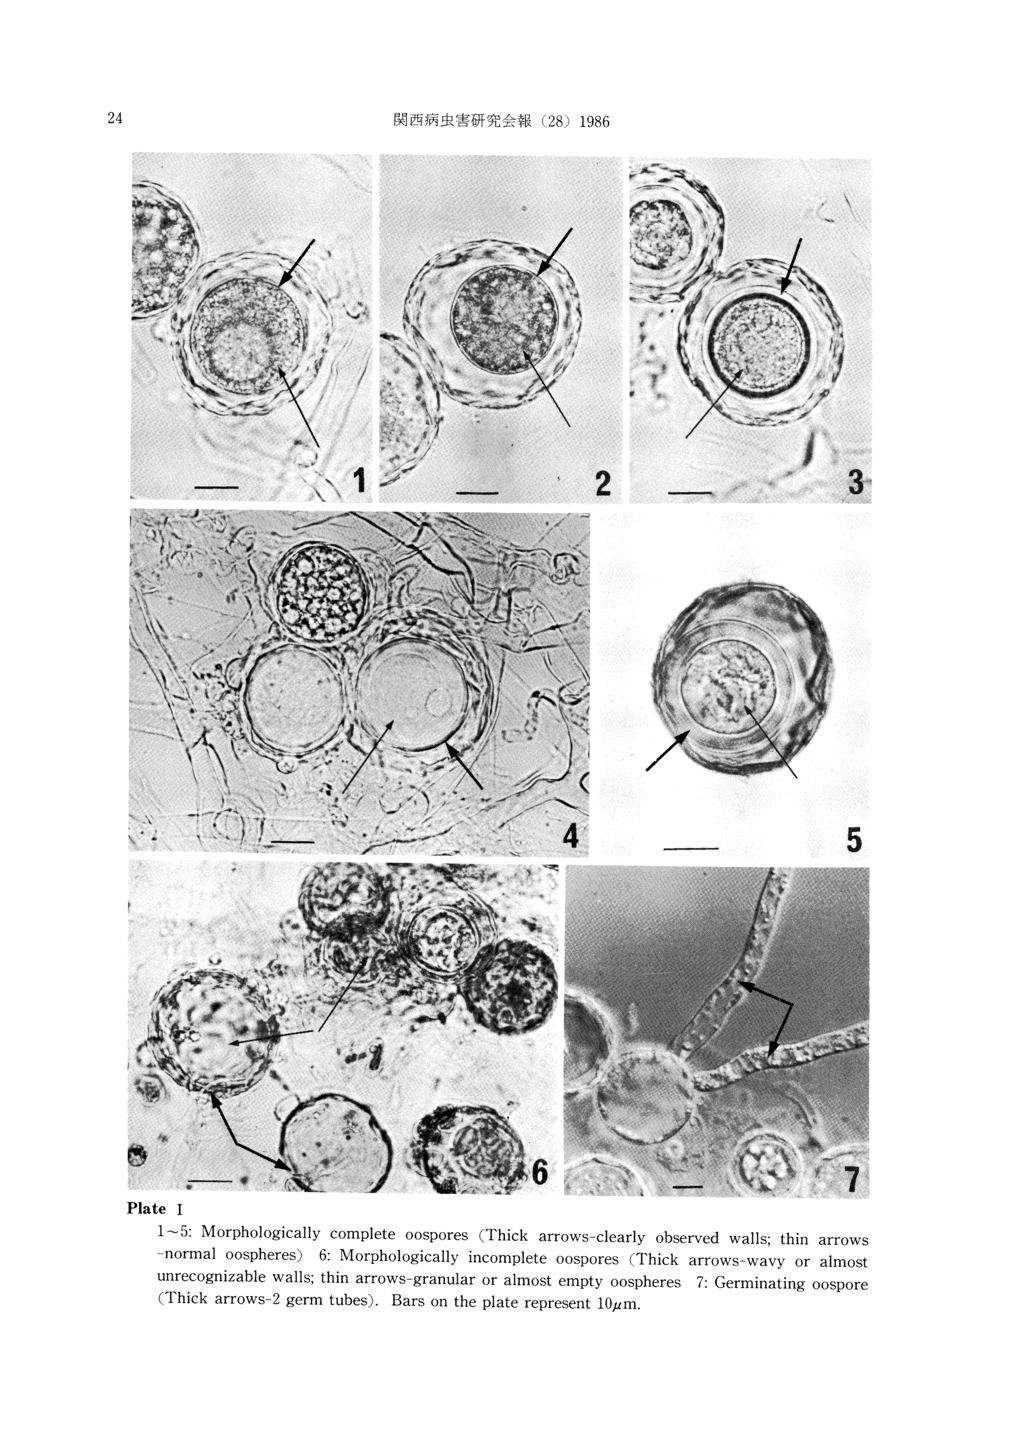 24 関 西 病 虫害 研 究 会報(28)1986 Plate I 1 `5: Morphologically -normal complete oospheres)6: oospores(thick y unrecognizable (Thick arrows-2 arrows -clearly observed walls; thin arrows